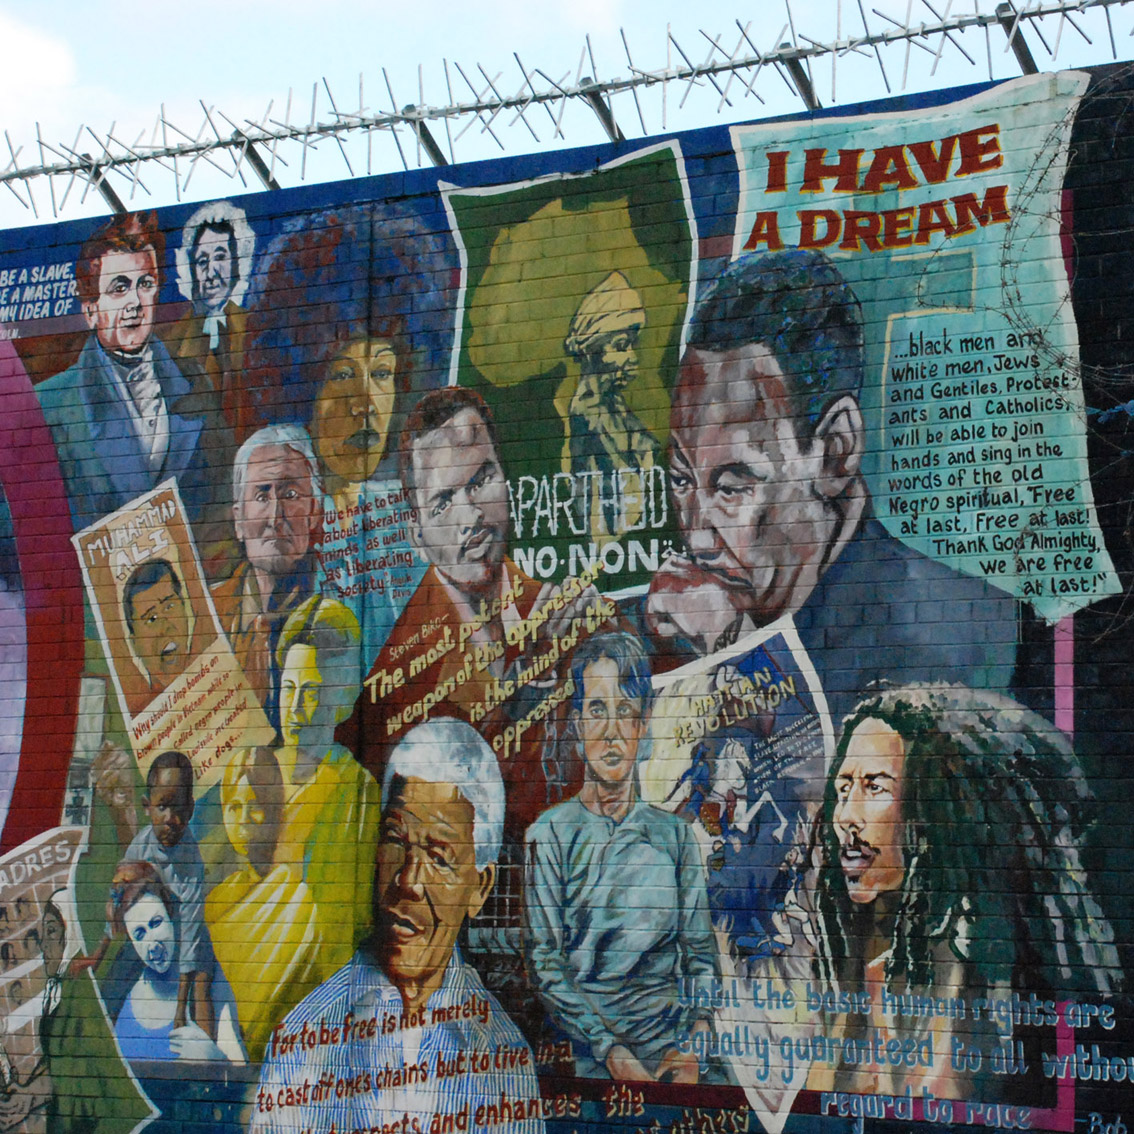 Los murales de Belfast